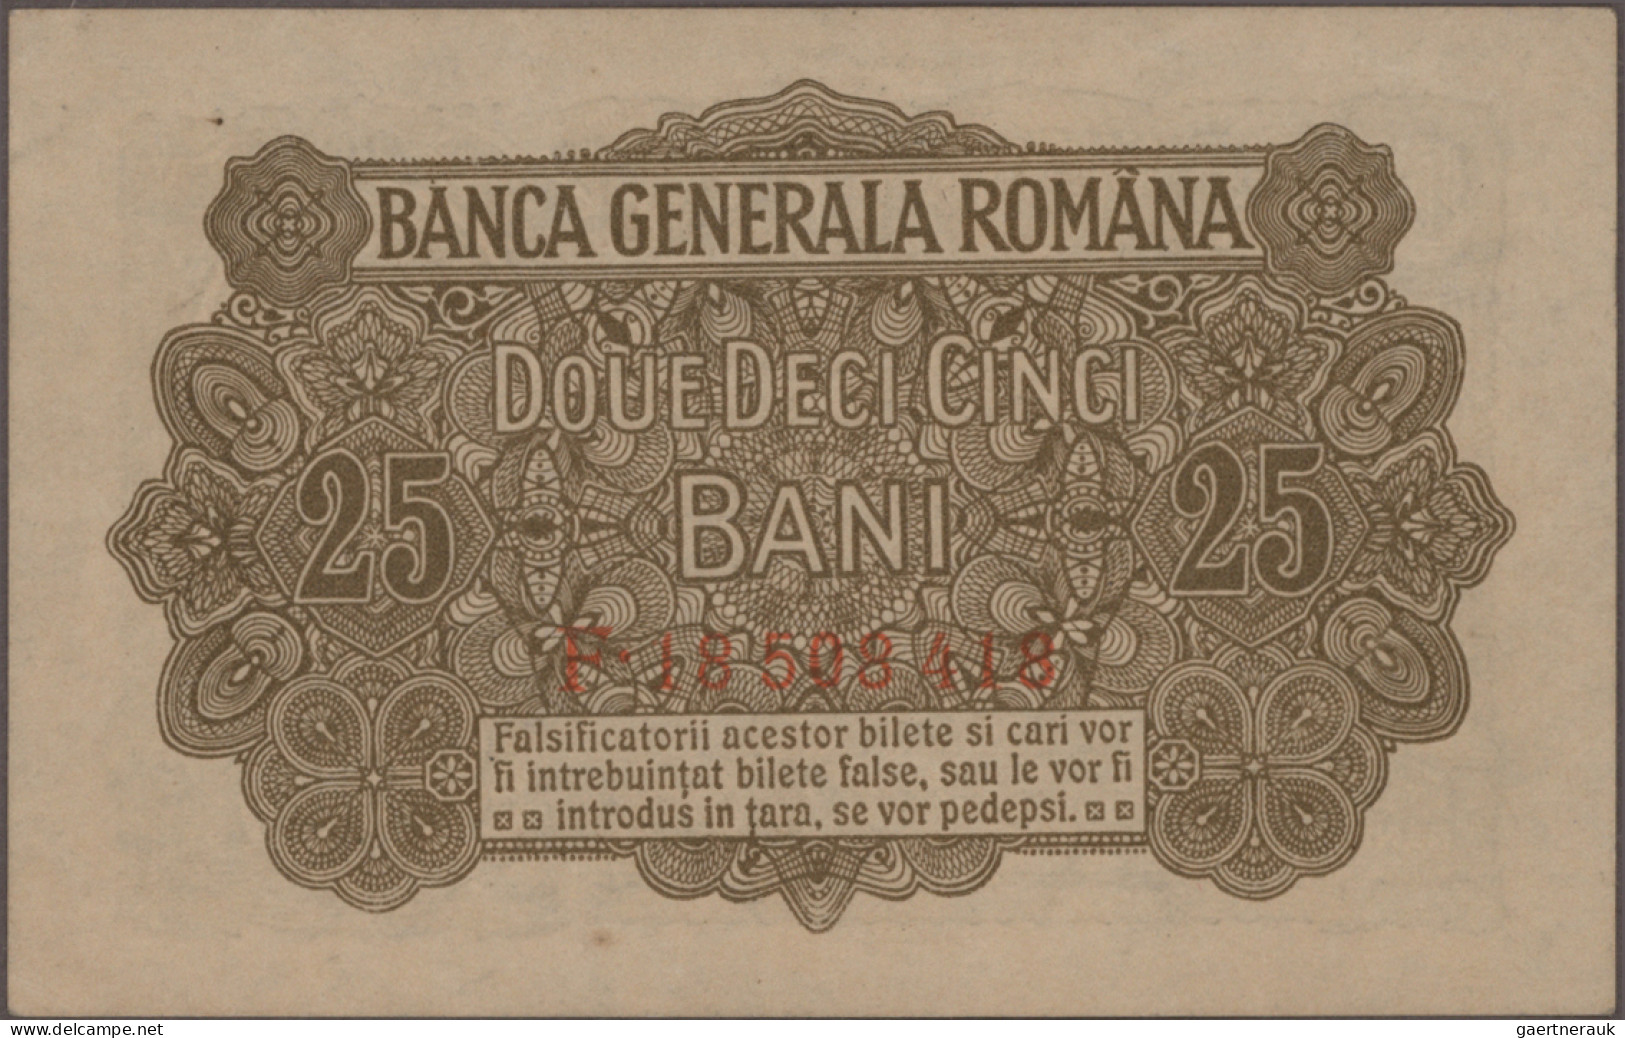 Romania: Banca Generală Română – German Occupation WW I, set with 4 banknotes, s